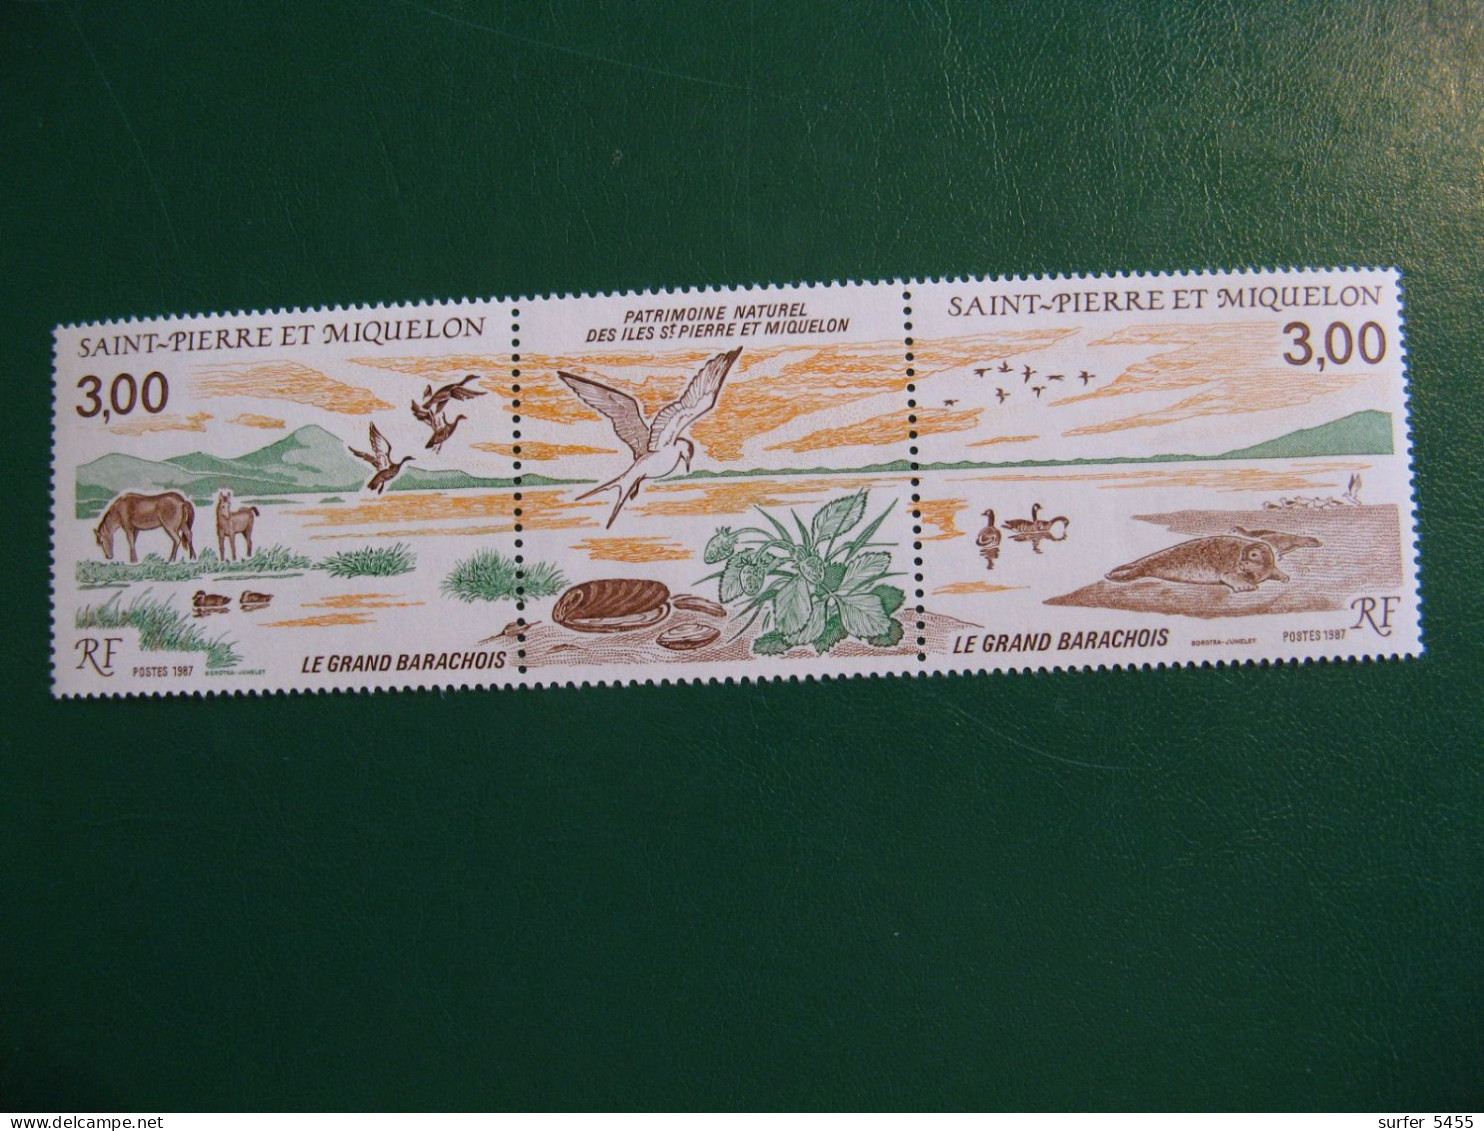 SAINT PIERRE ET MIQUELON YVERT POSTE ORDINAIRE N° 485A TIMBRES NEUFS** LUXE - MNH - COTE 5,50 EUROS - Unused Stamps